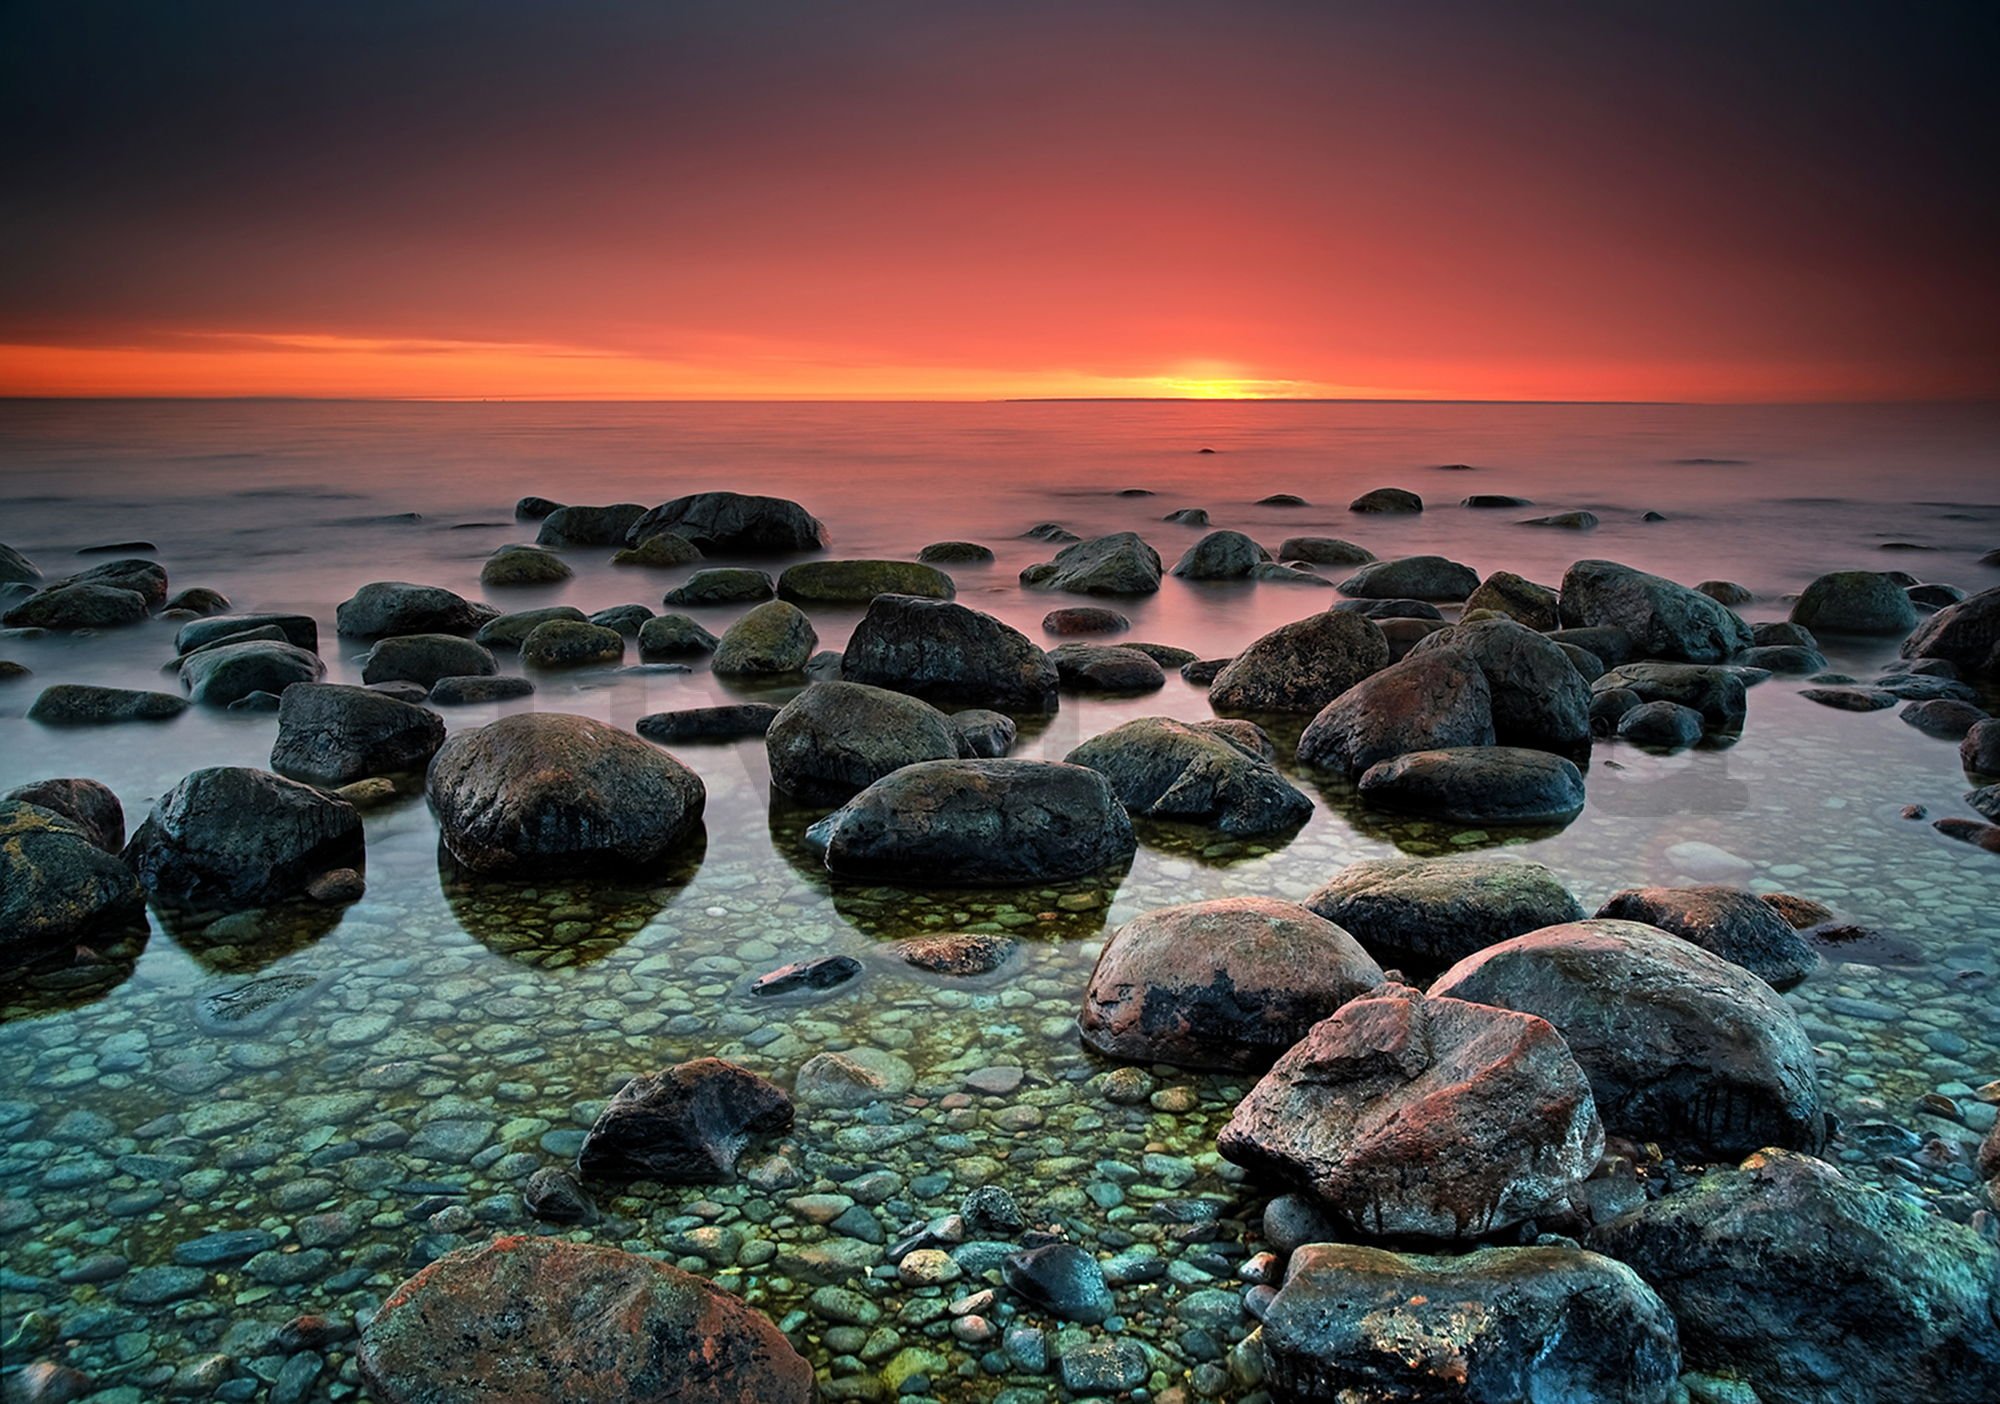 Fotótapéta: Kövek a tengerparton (1) - 254x368 cm